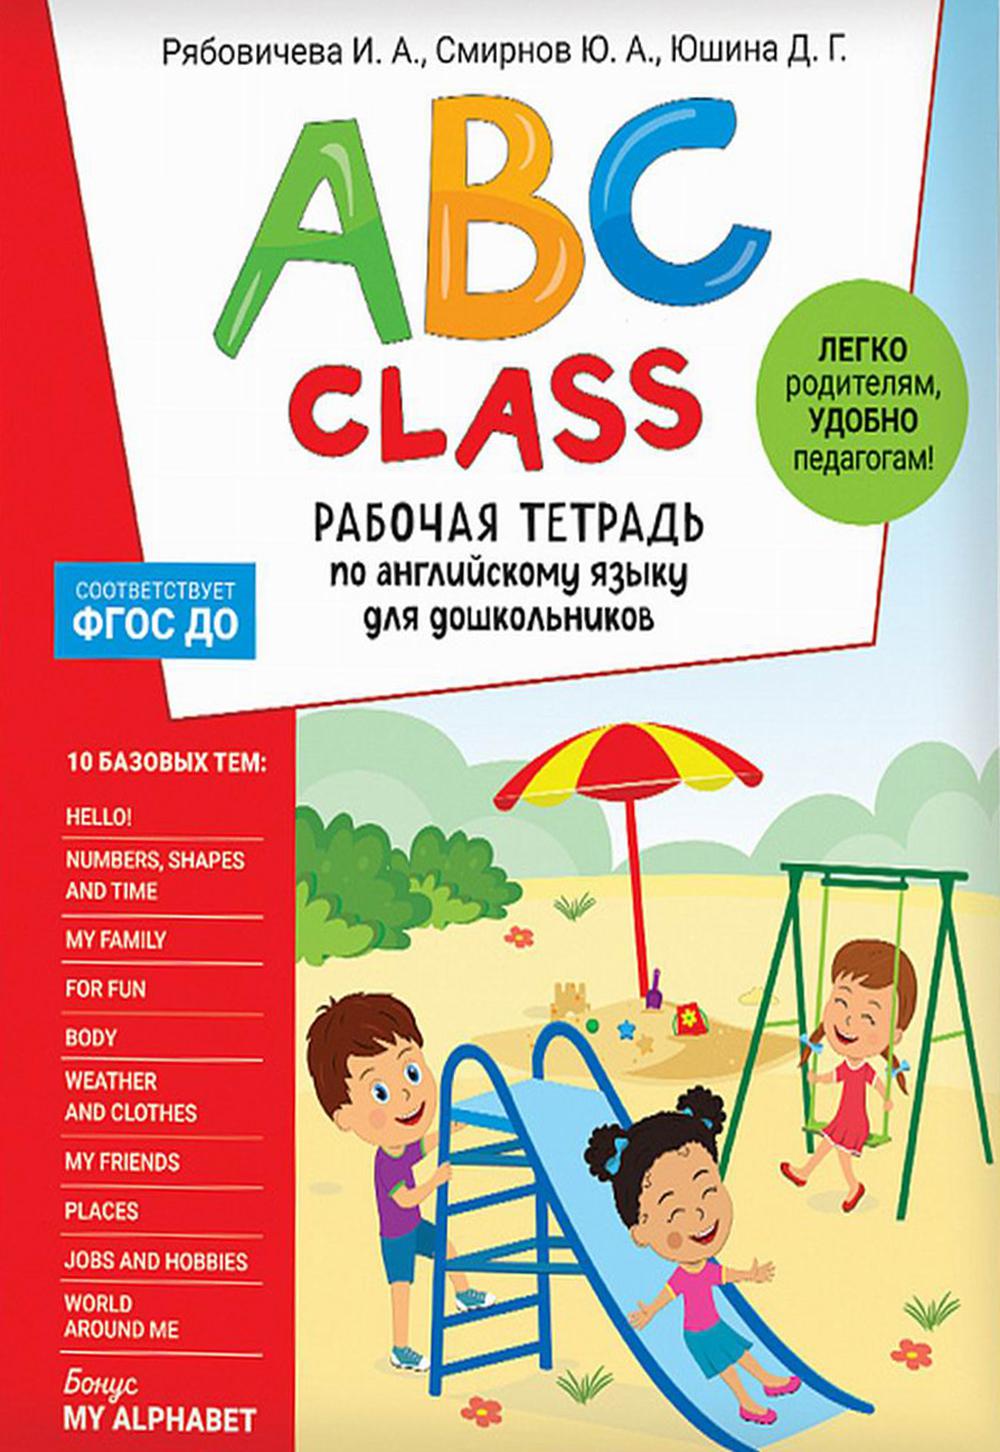 ABC class.       